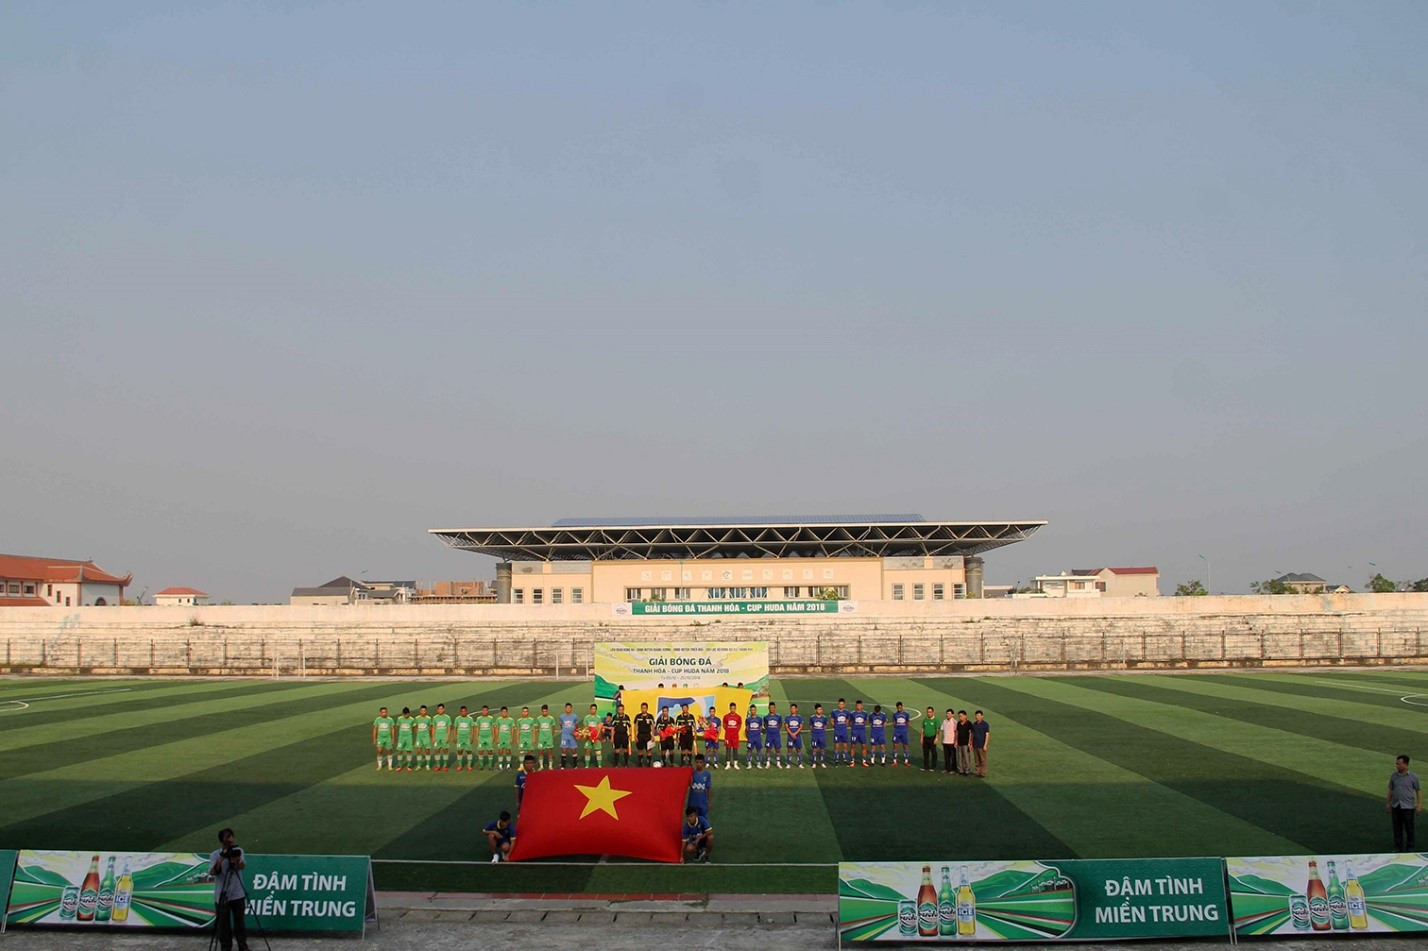 Giải Bóng đá Thanh Hóa – Cúp Huda là giải bóng đá thường niên được người hâm mộ môn thể thao vua xứ Thanh yêu thích và chờ đón